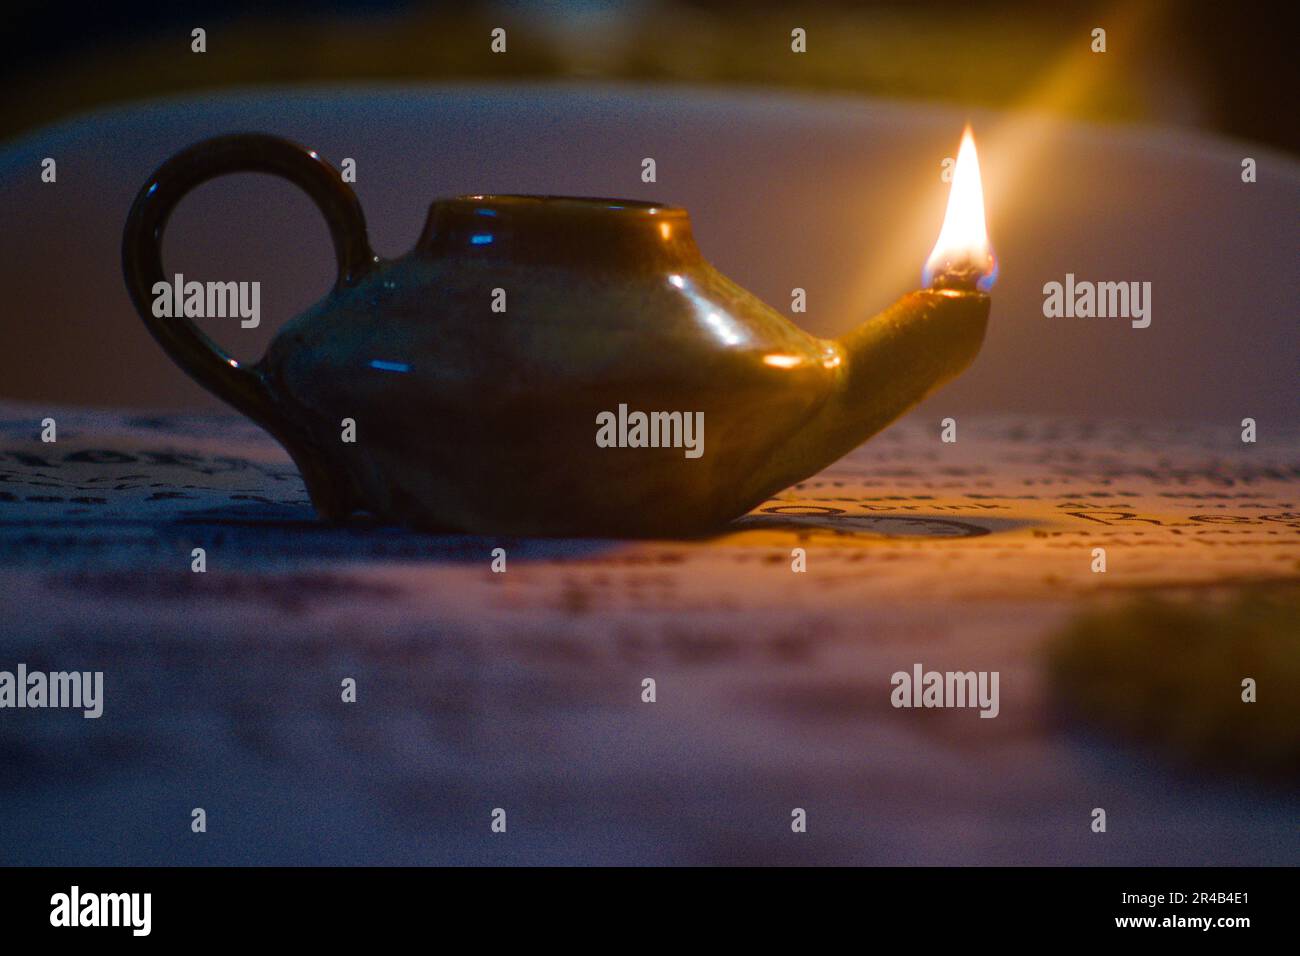 Questa immagine presenta una piccola teiera illuminata da una candela seduta su un tavolo di legno Foto Stock